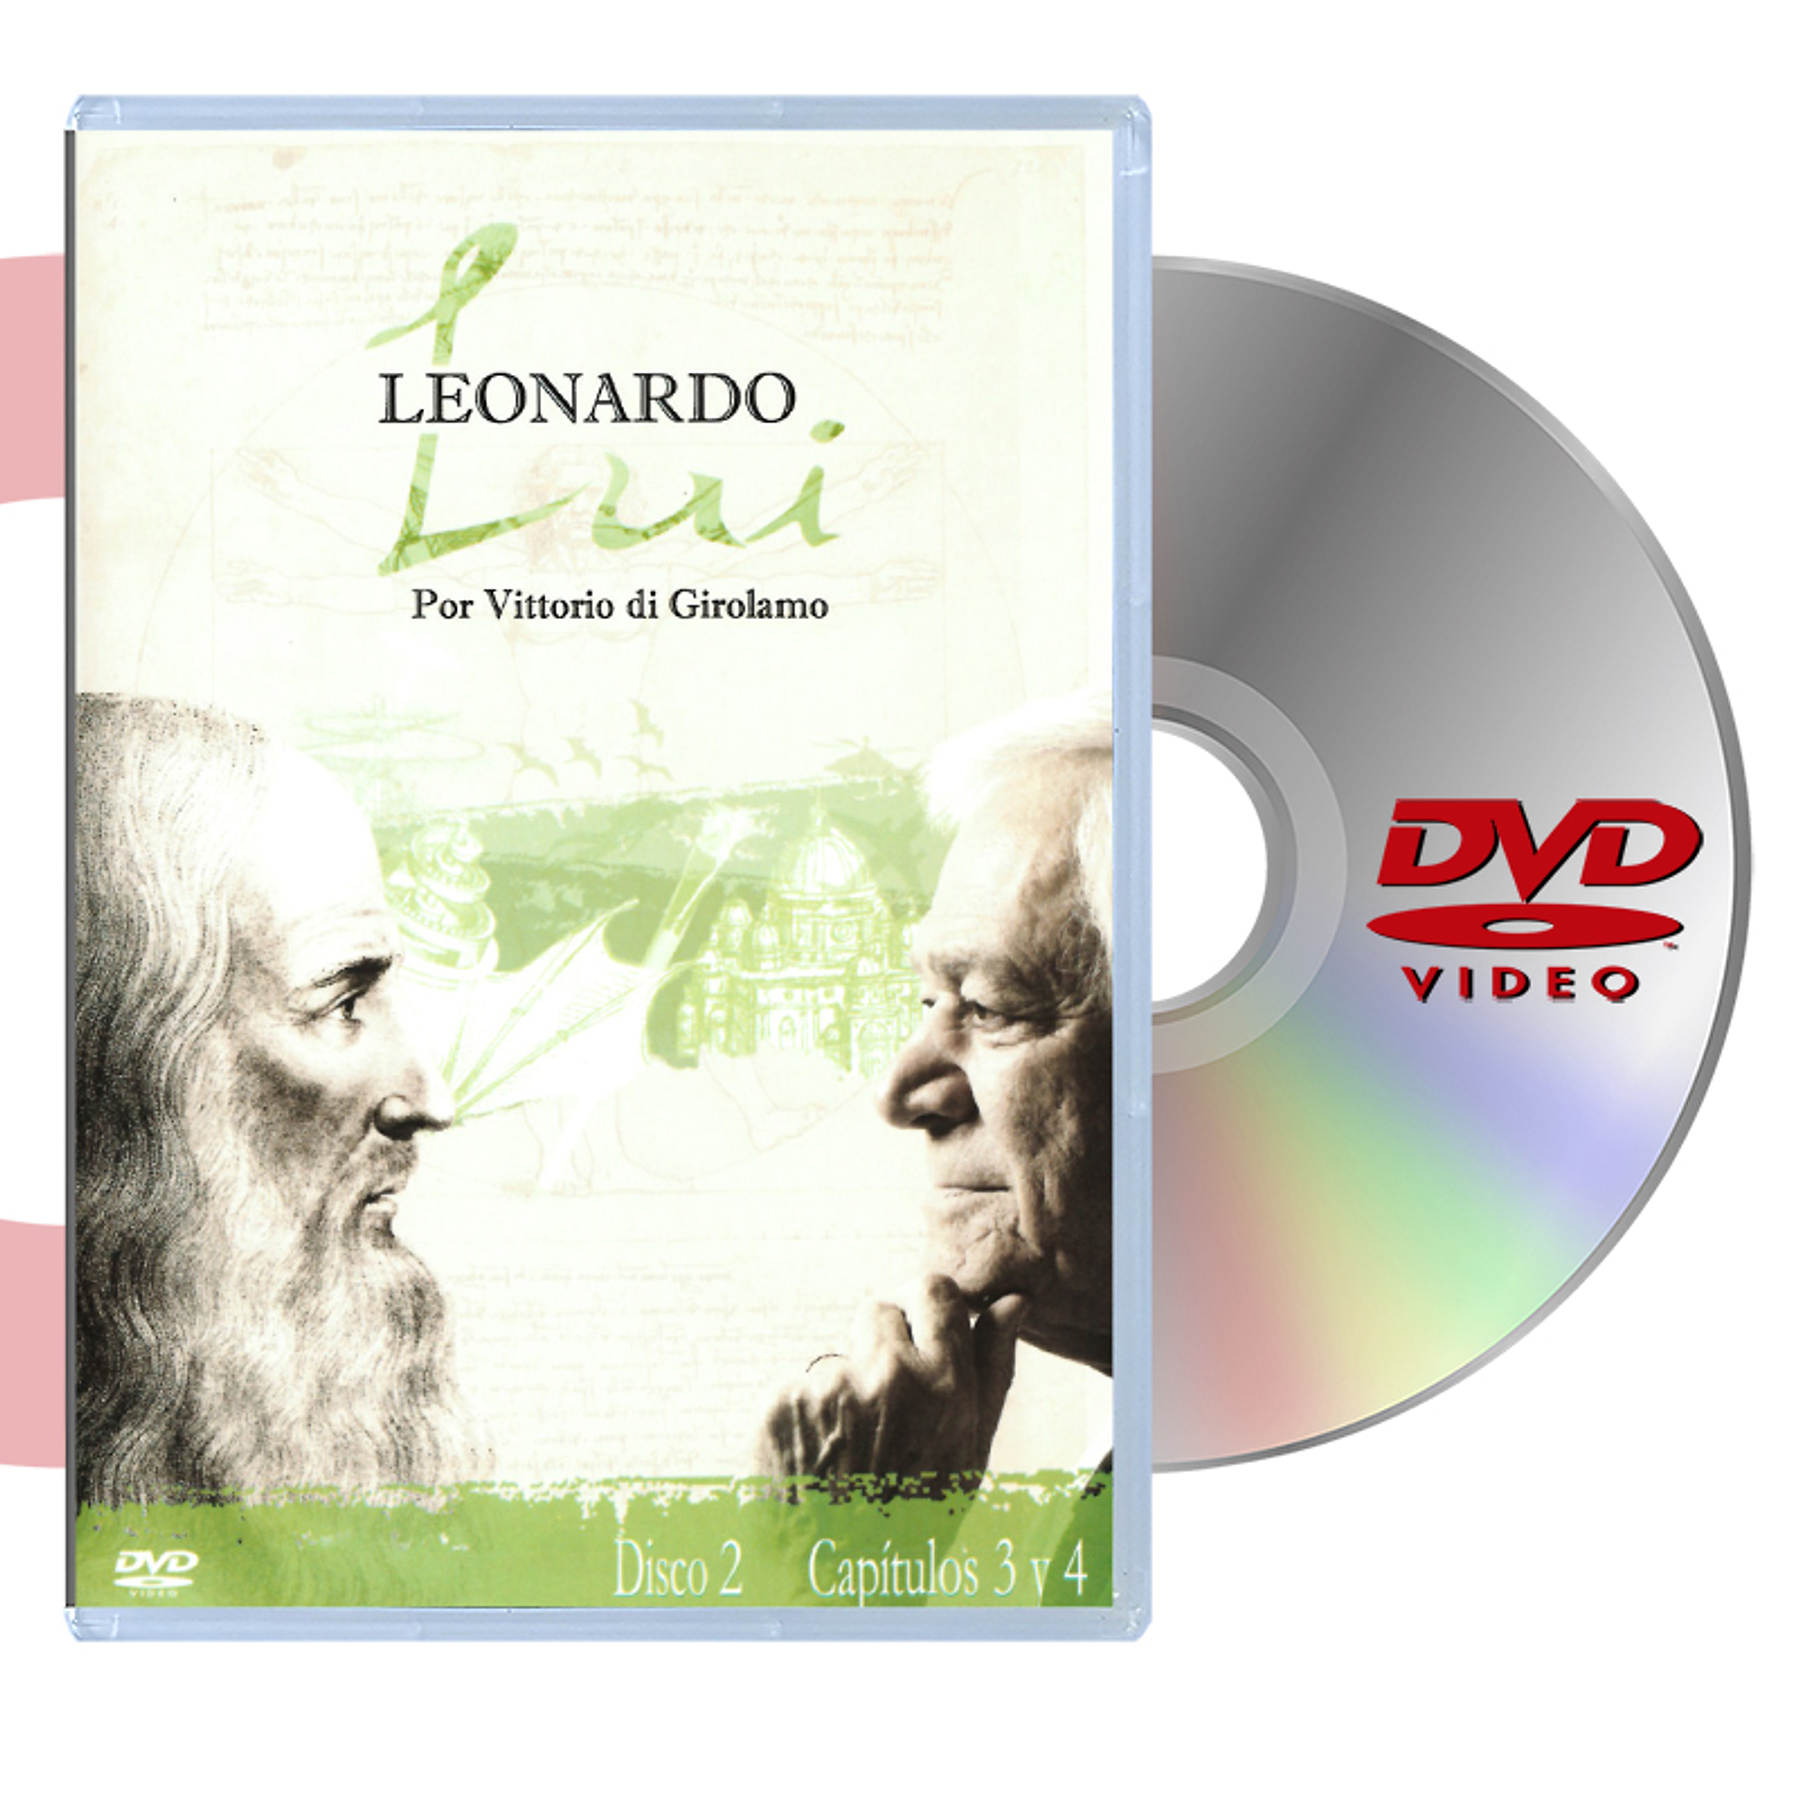 DVD LEONARDO LUI: DISCO 2 (CAPITULOS 3 Y 4)